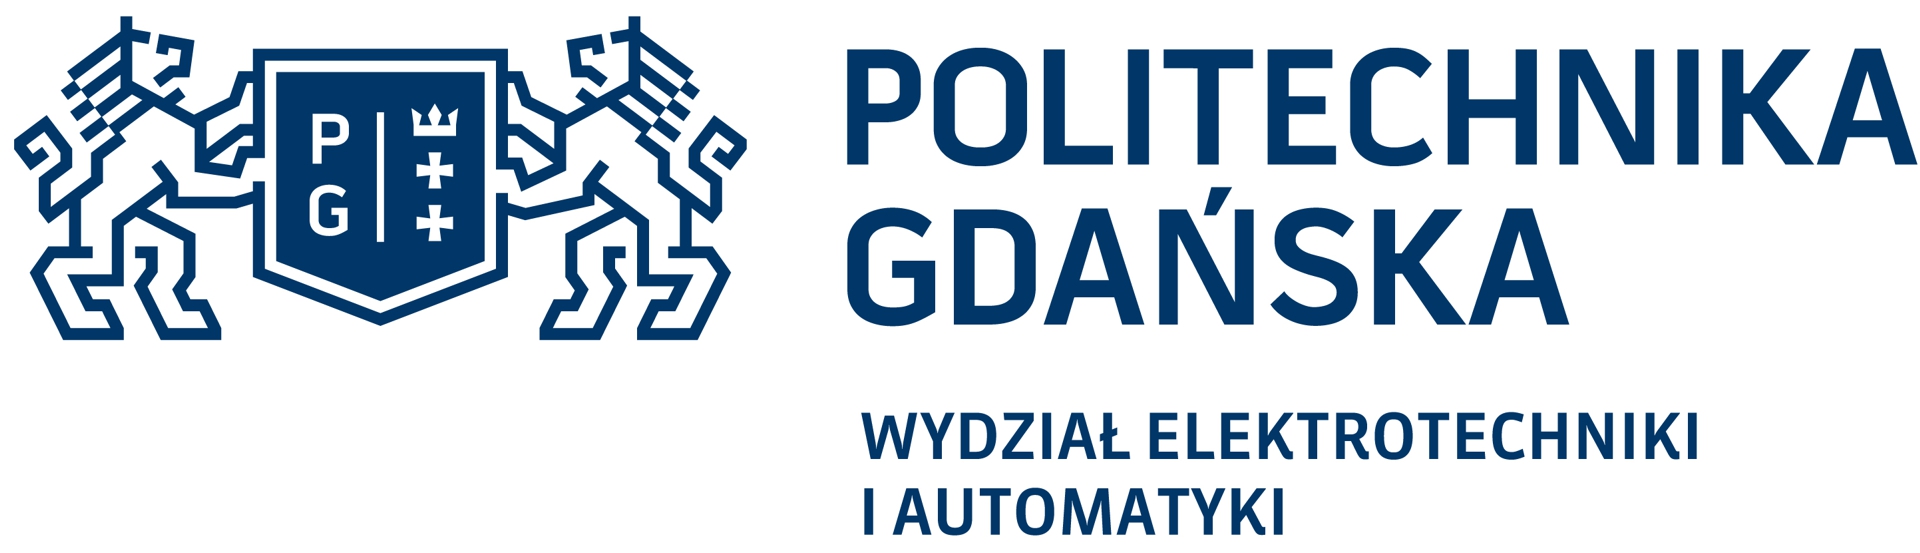 Politechnika gdanska